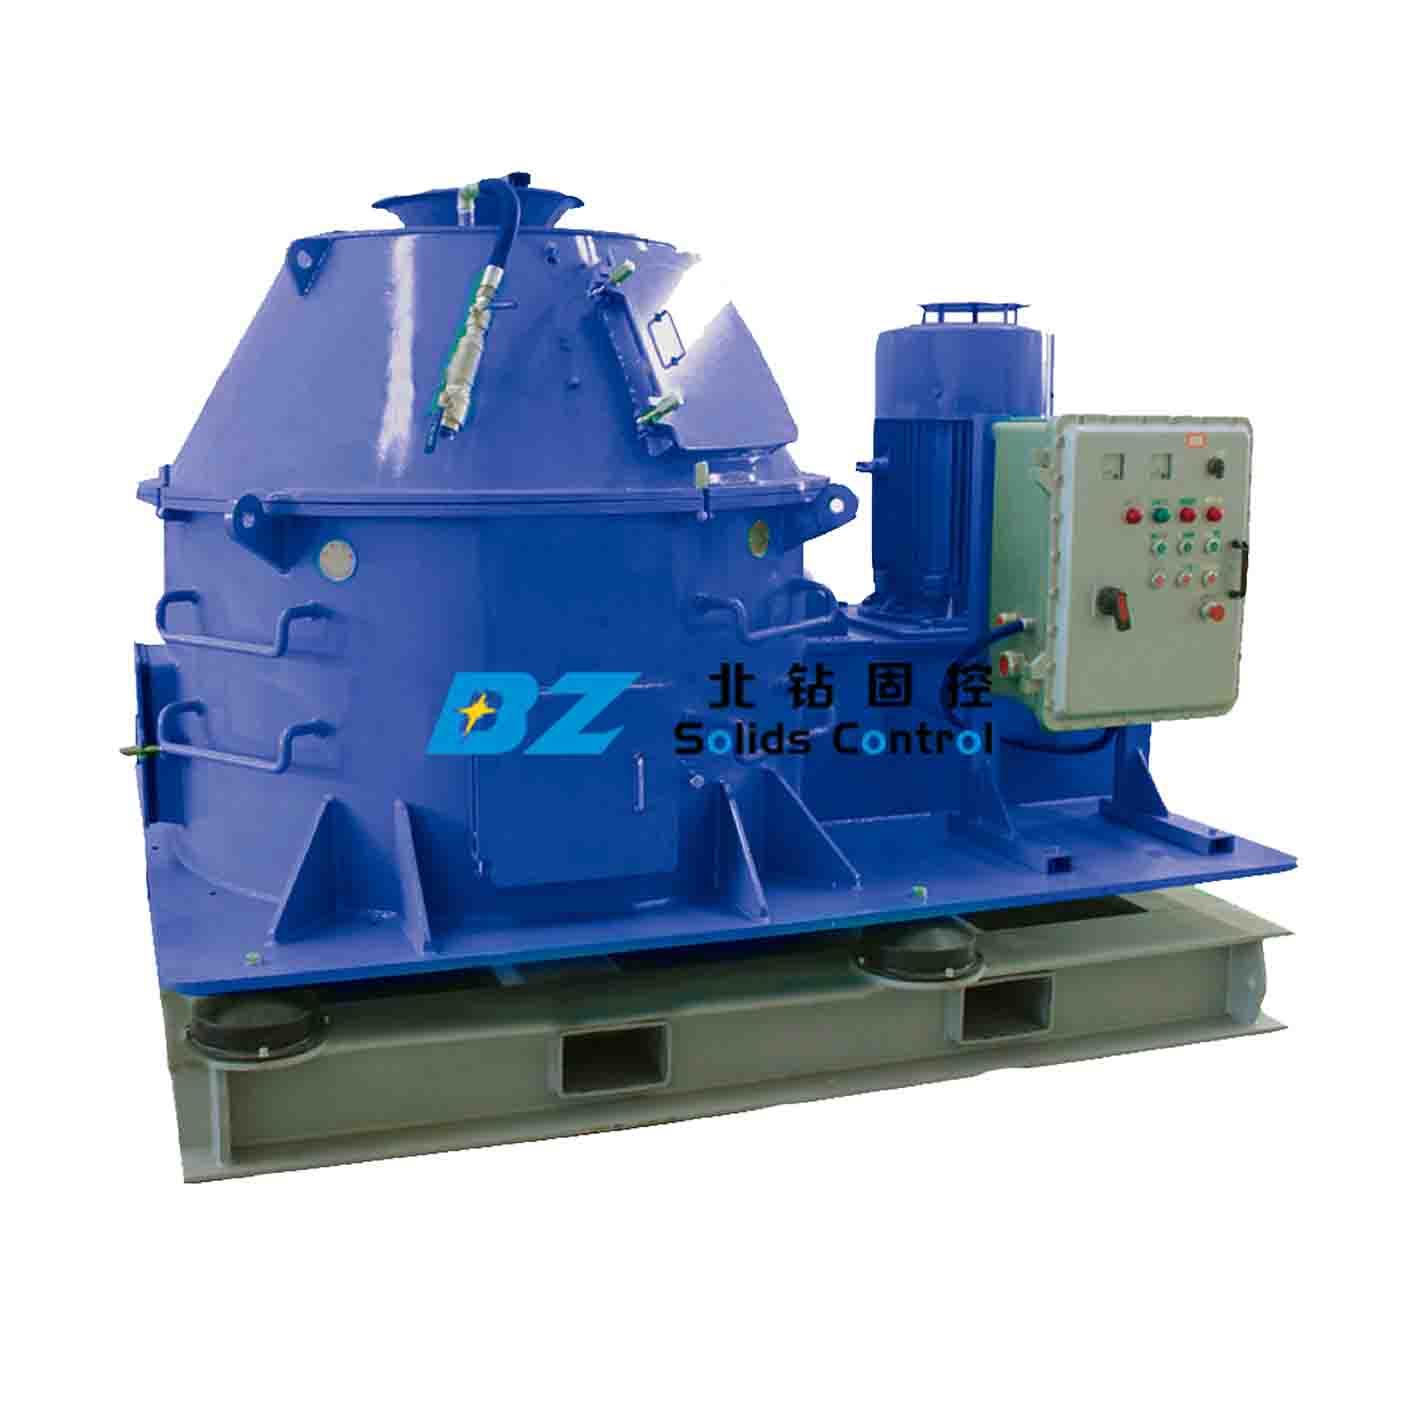 钻屑干燥机-北钻固控设备固控系统石油钻采设备生产厂家